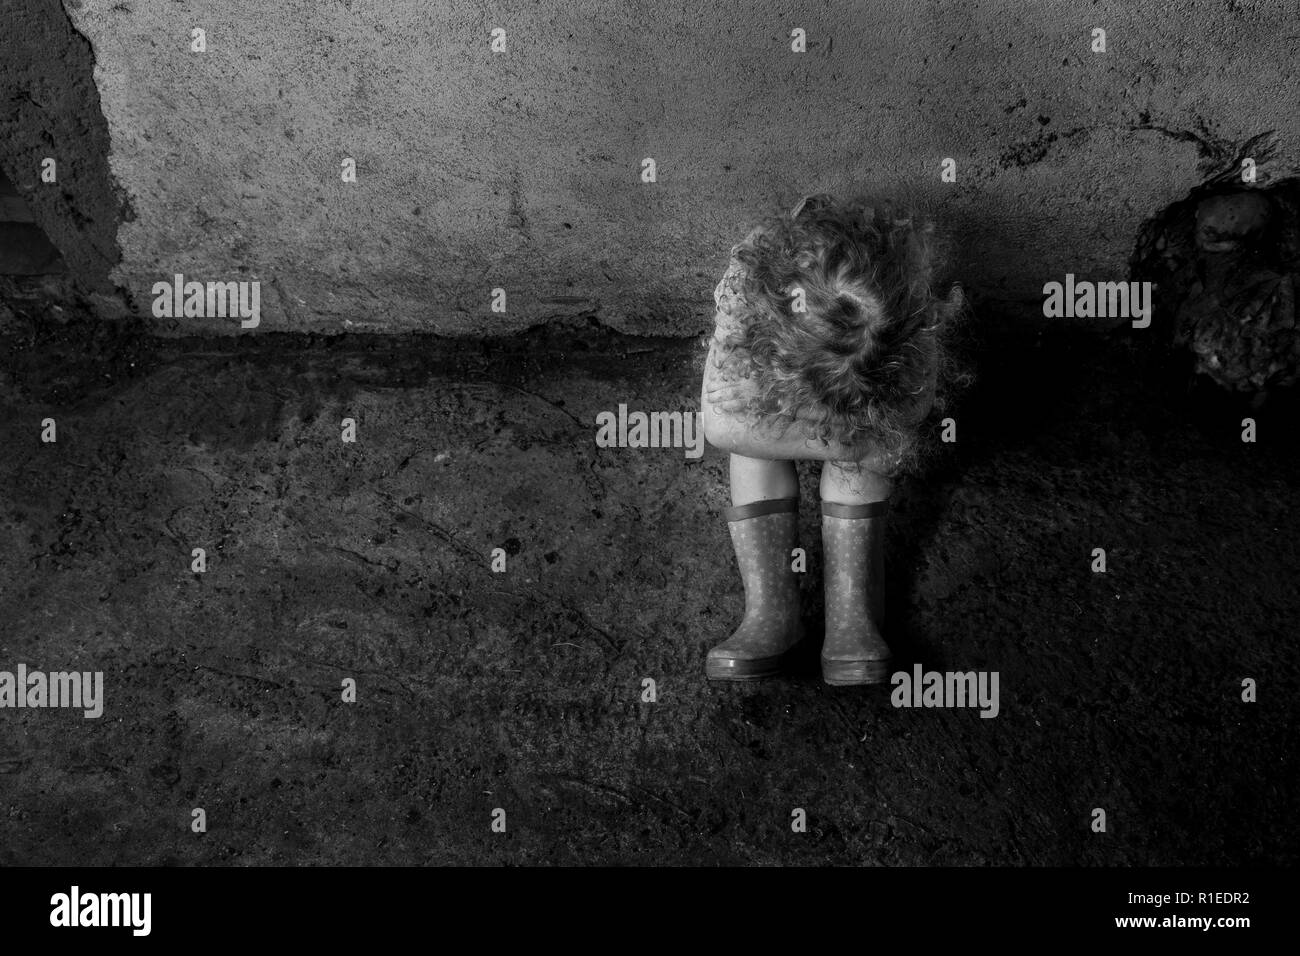 La violenza domestica concetto. Immagine in bianco e nero di paura ragazza bambino seduto da solo nel seminterrato sporco nel buio. Foto Stock